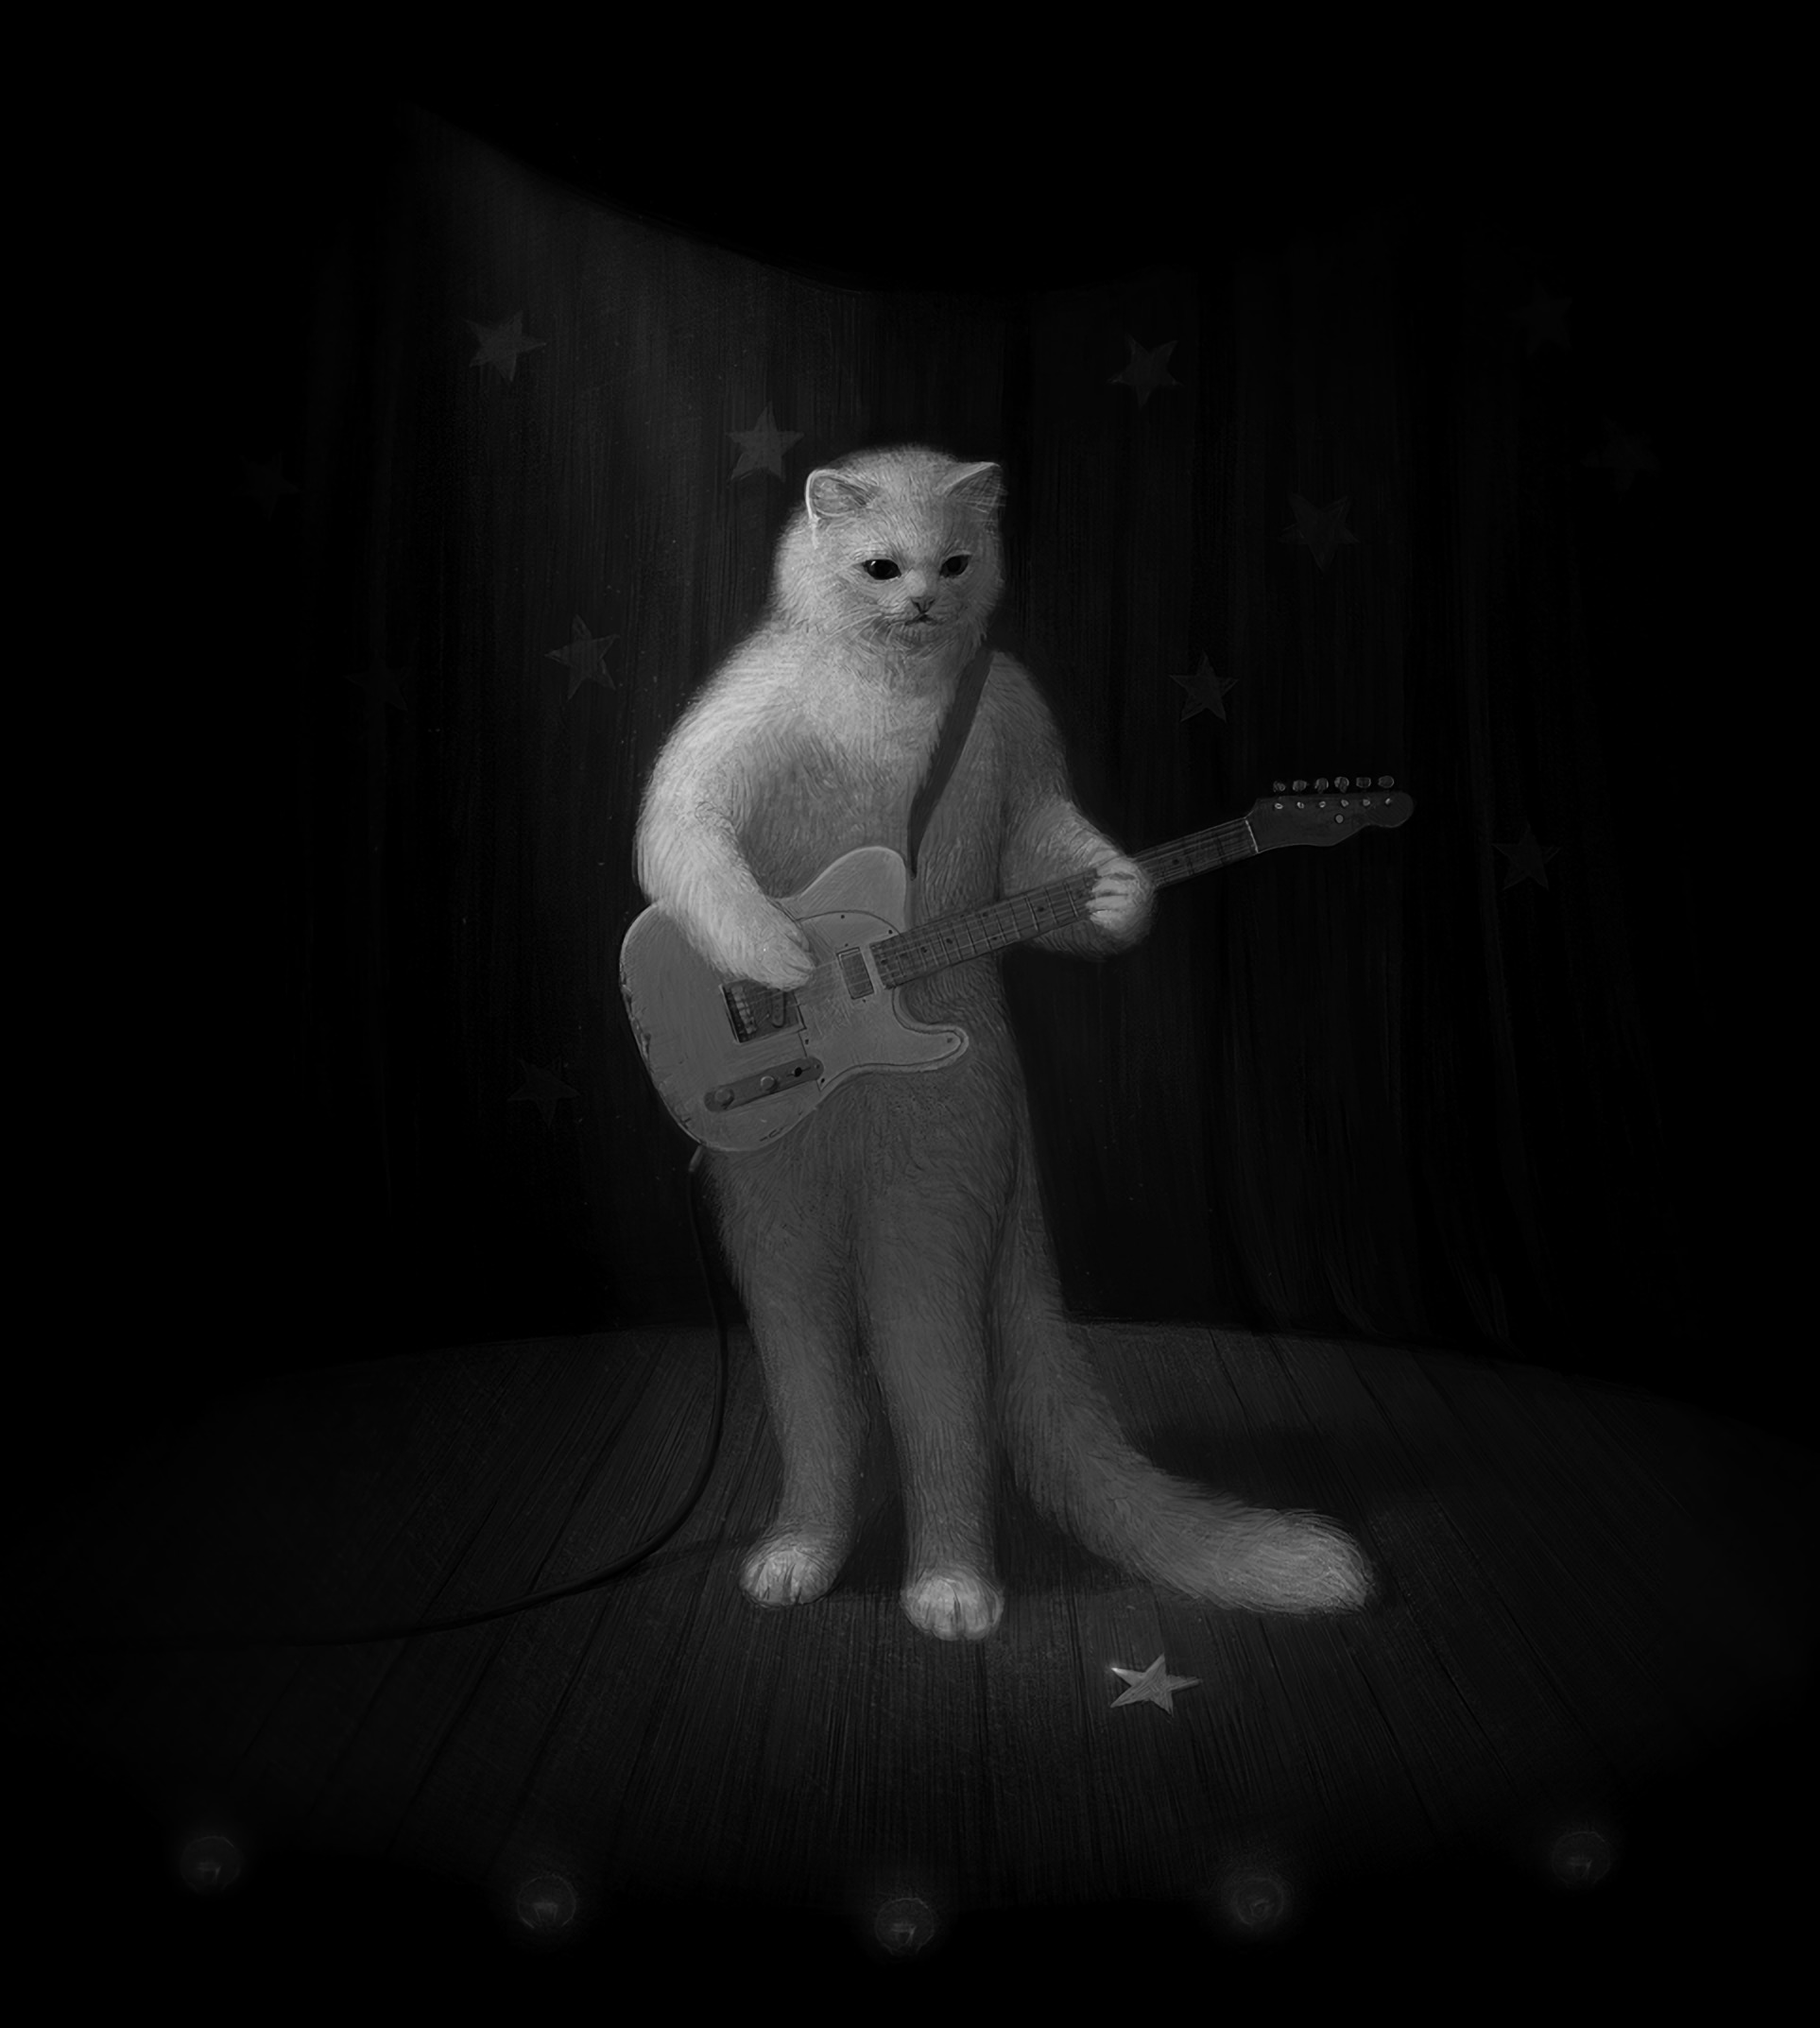 guitar, musician, art, cat, bw, chb